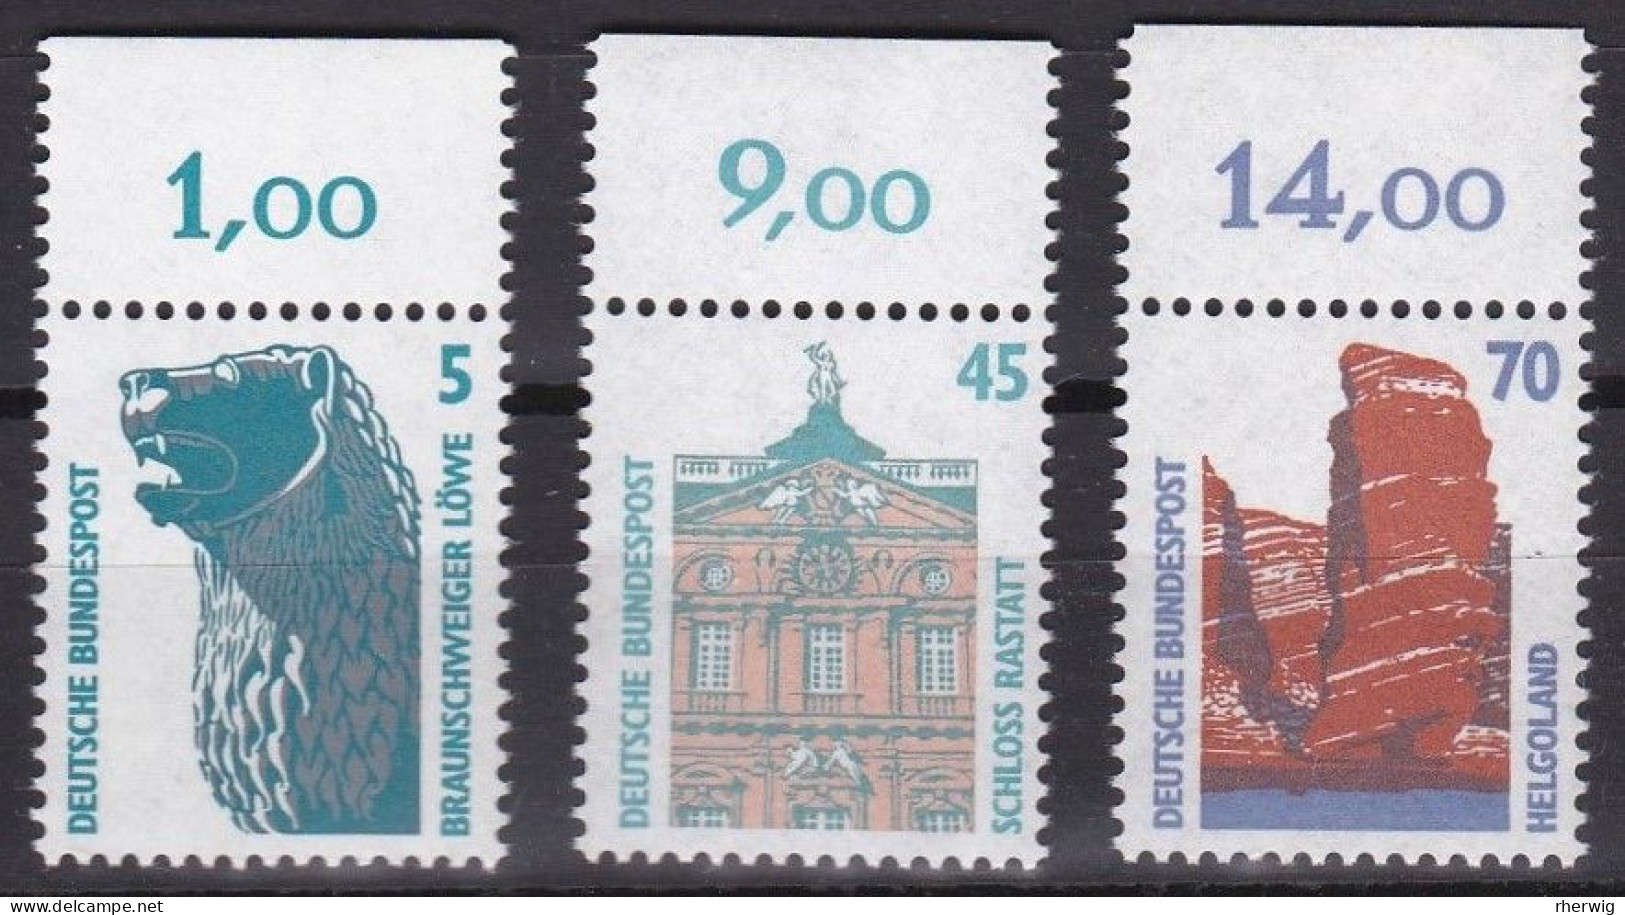 BRD, 1990, Nr. 1448, 1468-1469 ** Sehenswürdigkeiten (VII, VIII), 3 Marken Mit Oberrand - Neufs